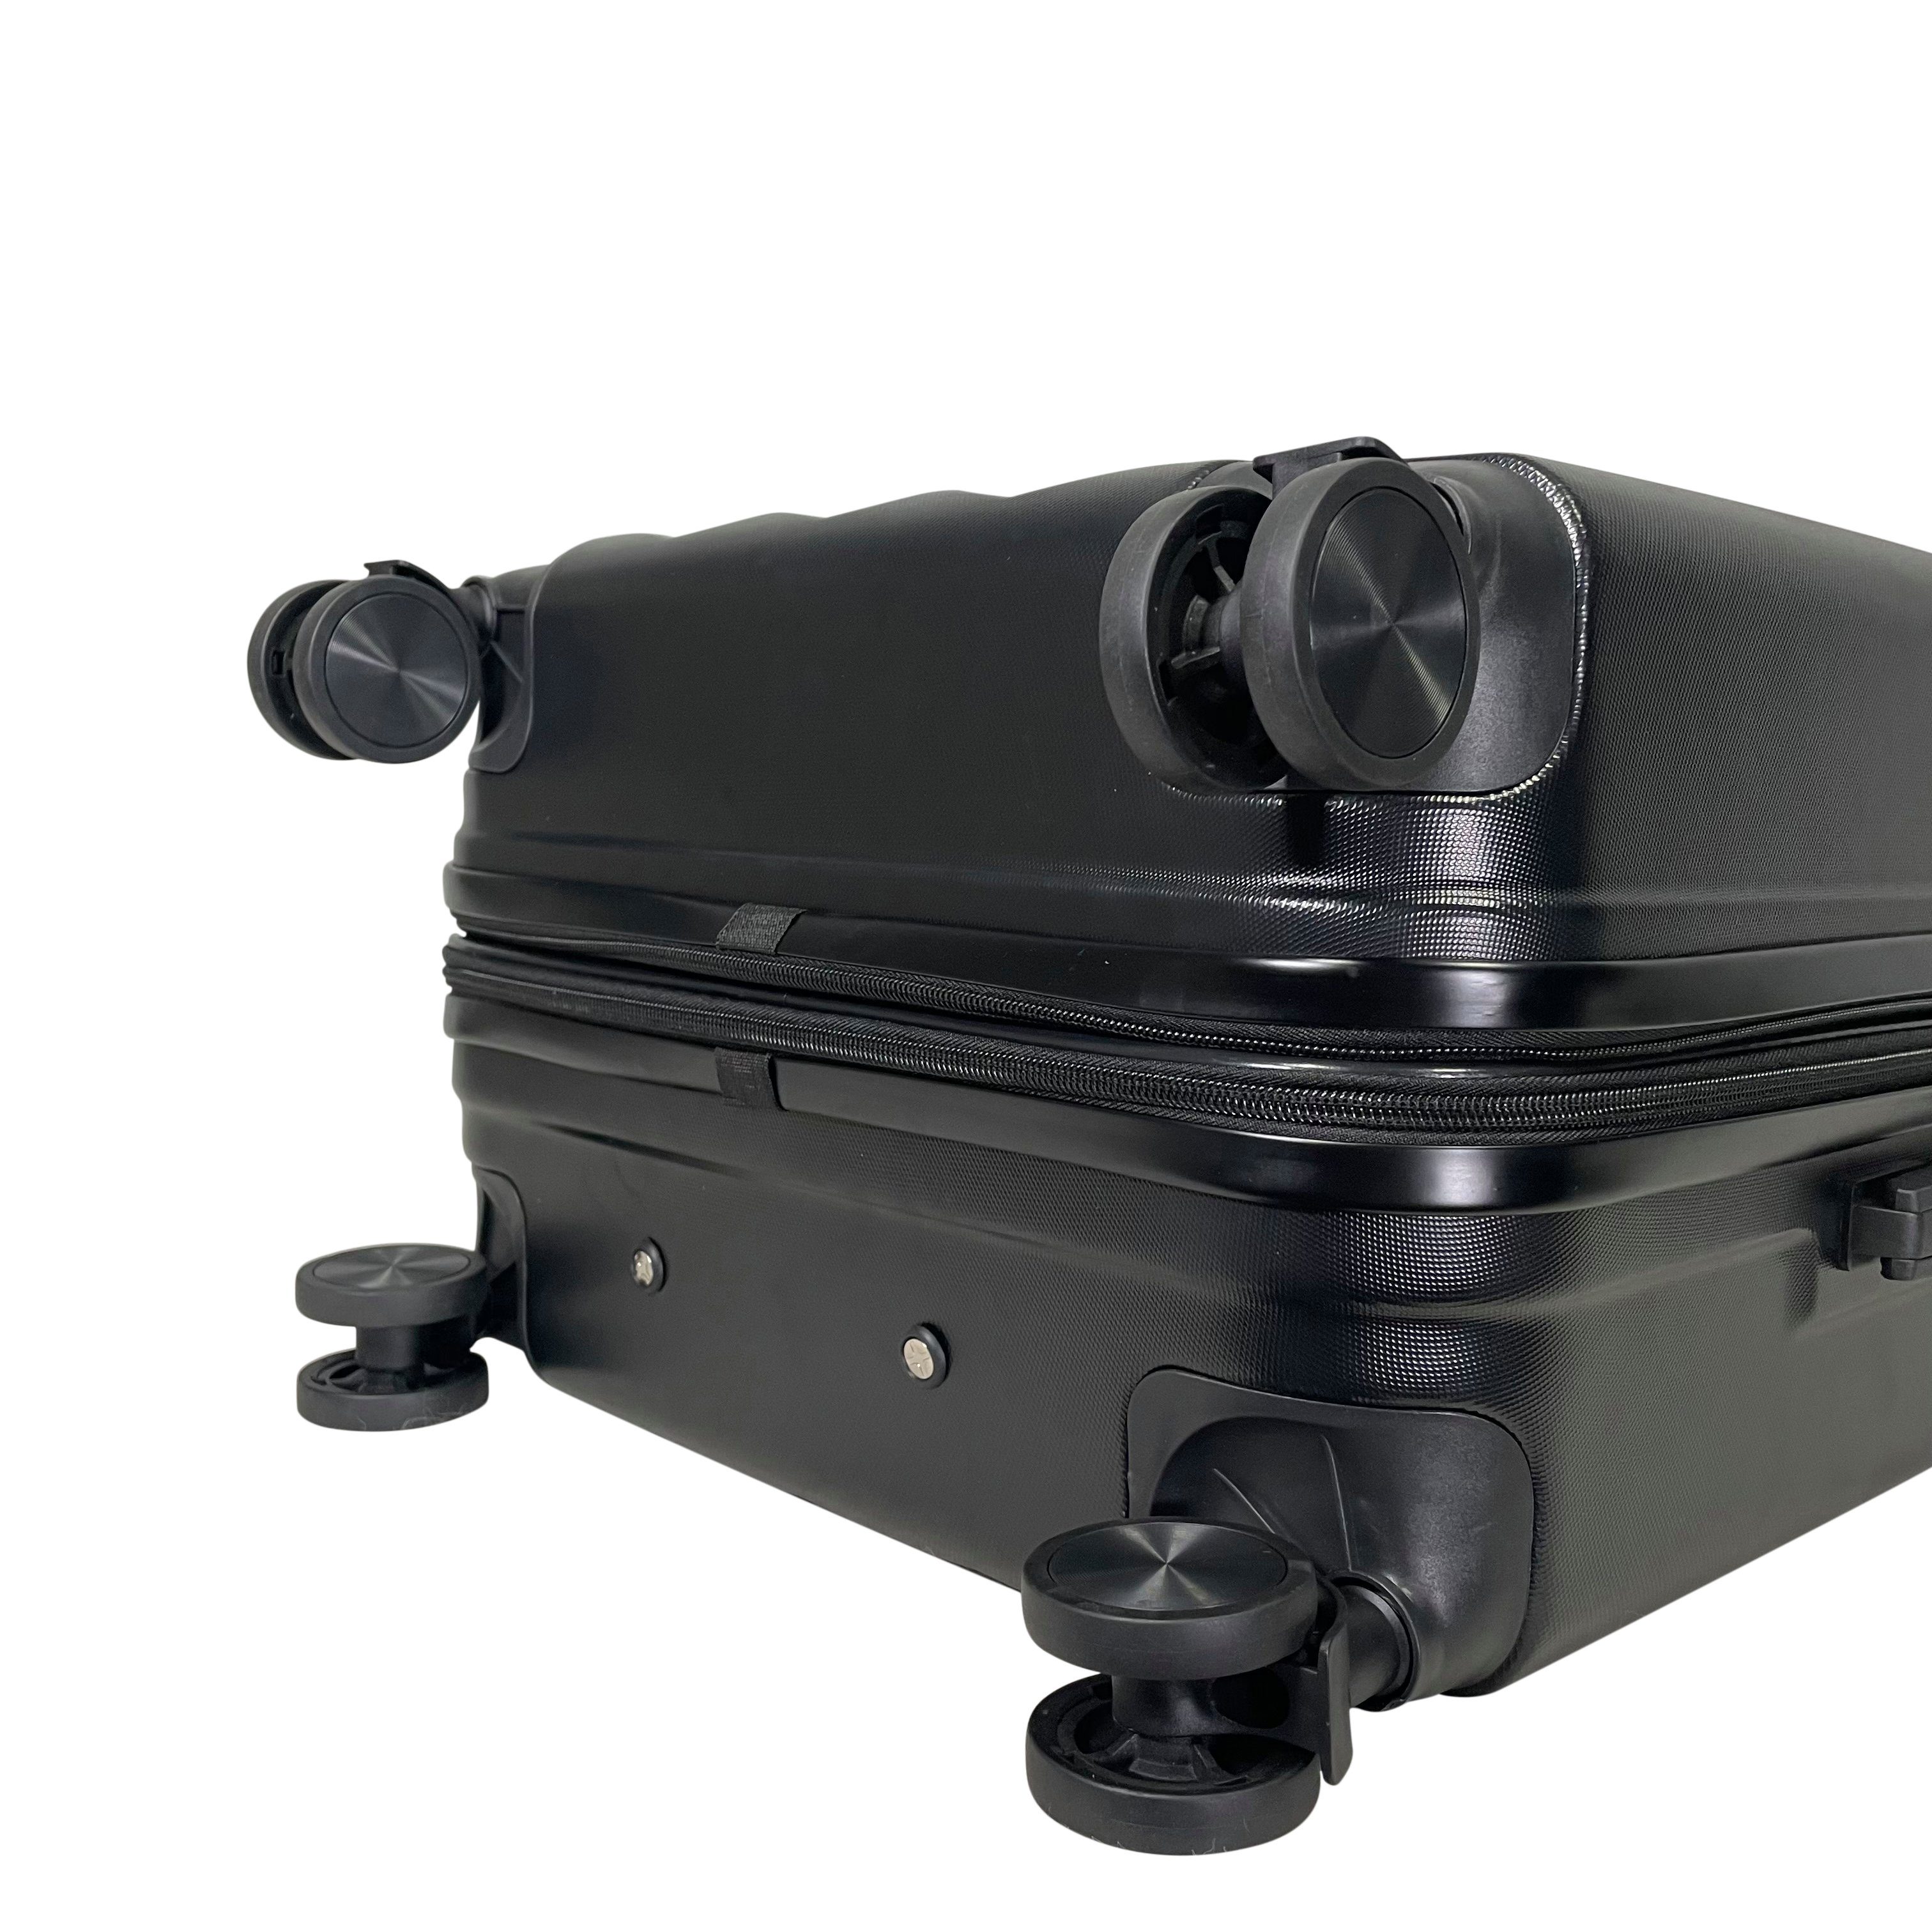 MTB Koffer (Handgepäck-Mittel-Groß-Set) Hartschalen ABS Schwarz Reisekoffer erweiterbar